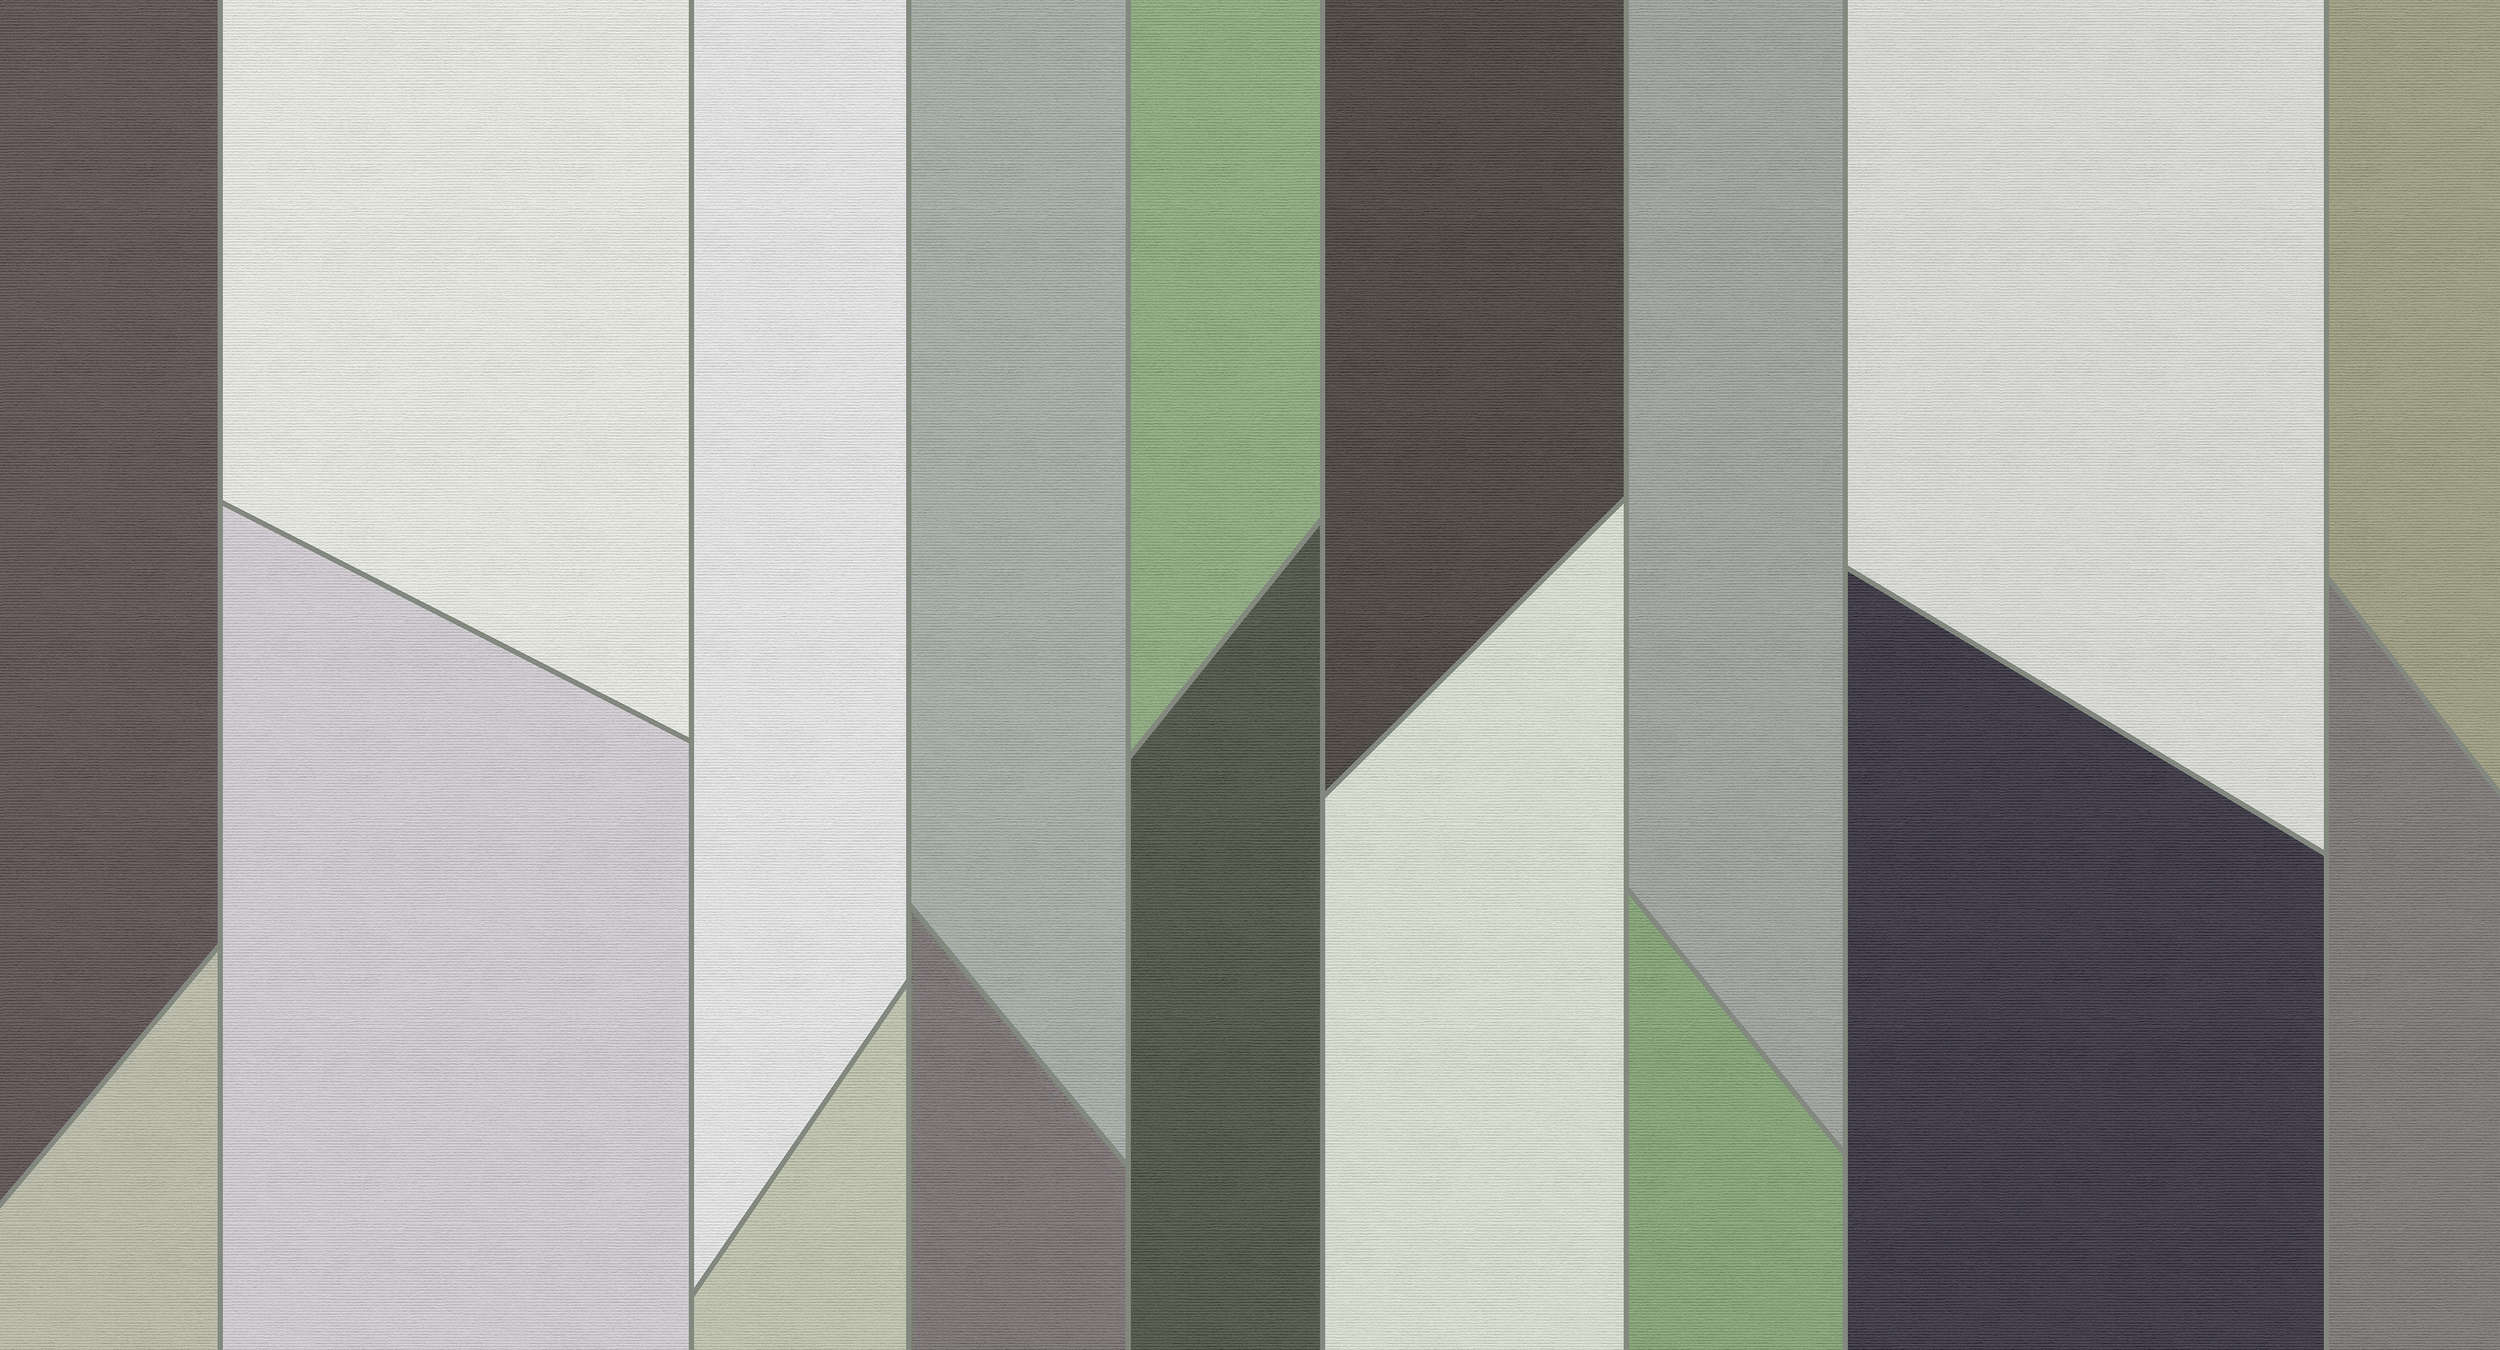             Geometry 3 - Streifen Fototapete in gerippter Struktur mit buntem Retro Design – Grün, Violett | Mattes Glattvlies
        